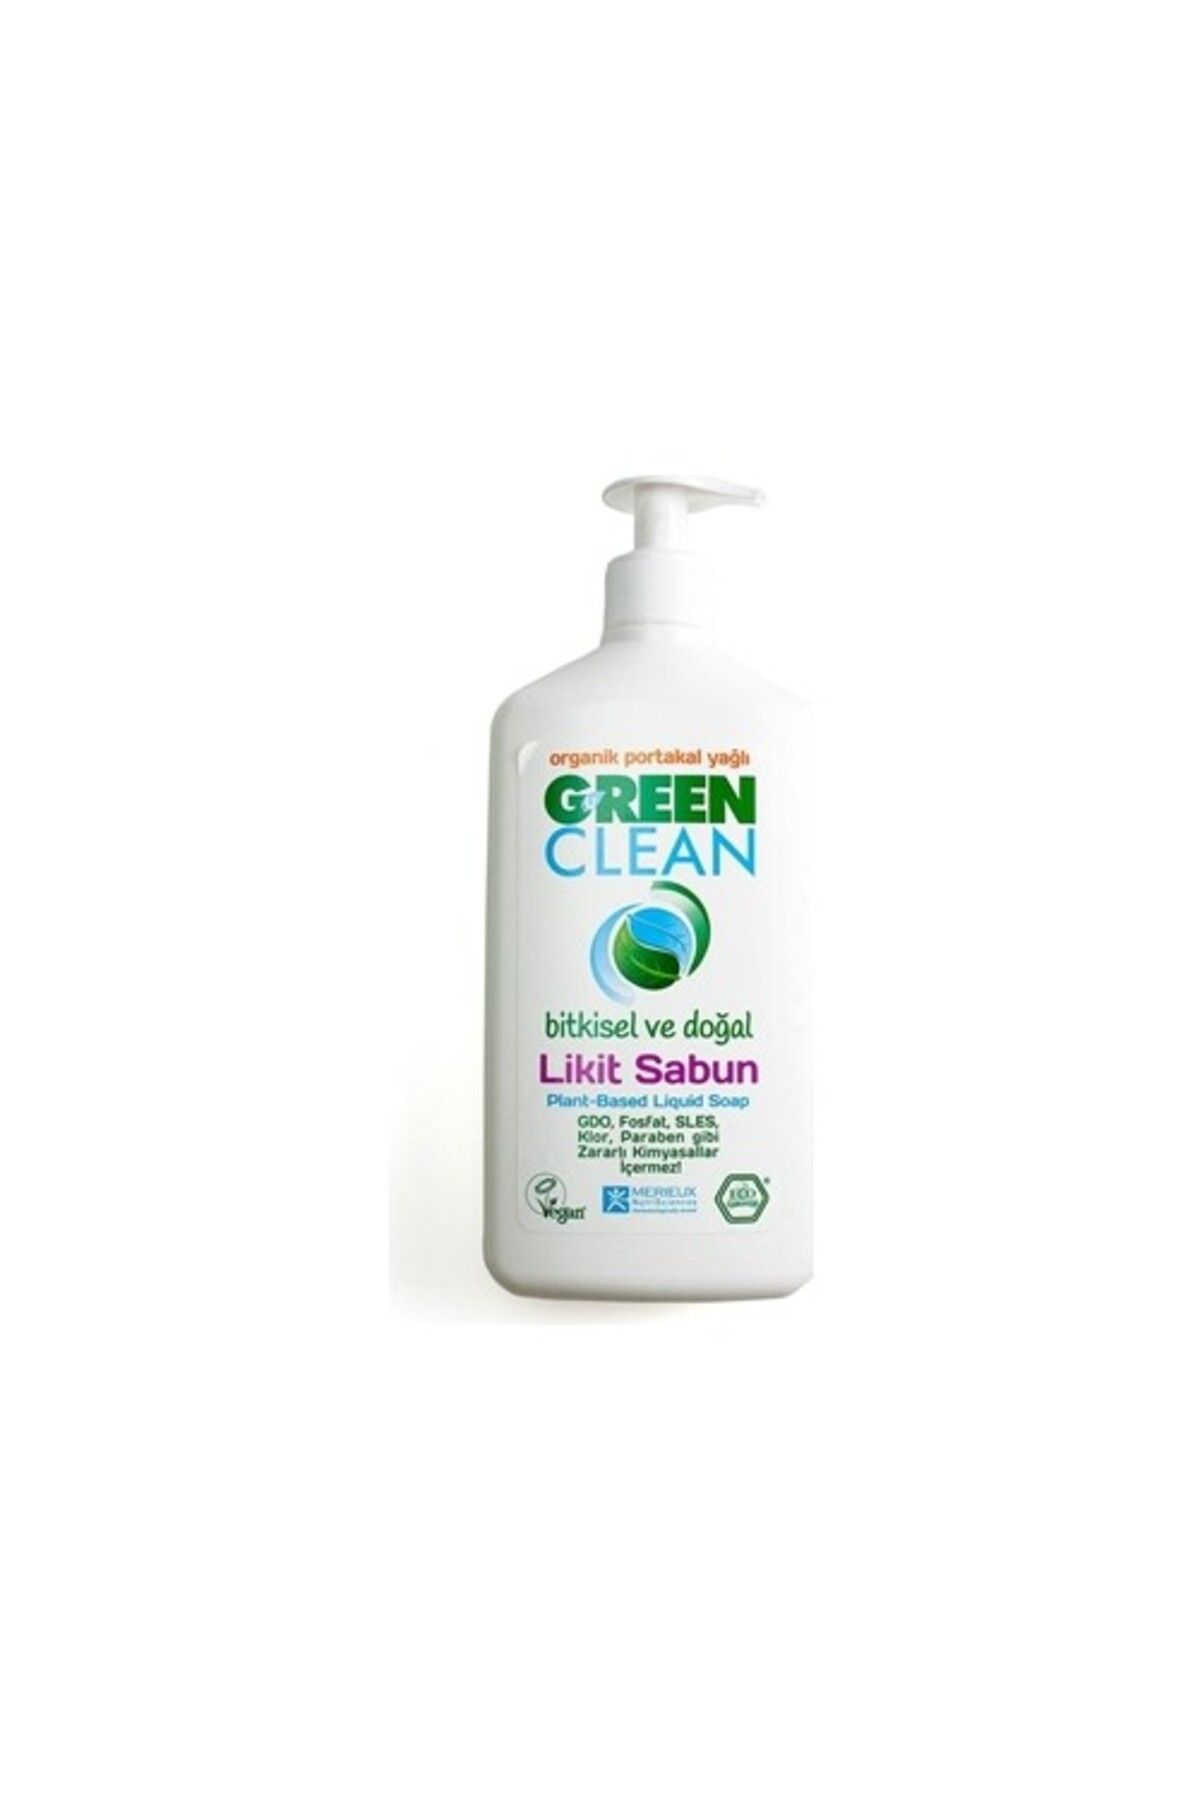 Green Clean Bitkisel Likit Sabun Portakal Yağlı 500 ml